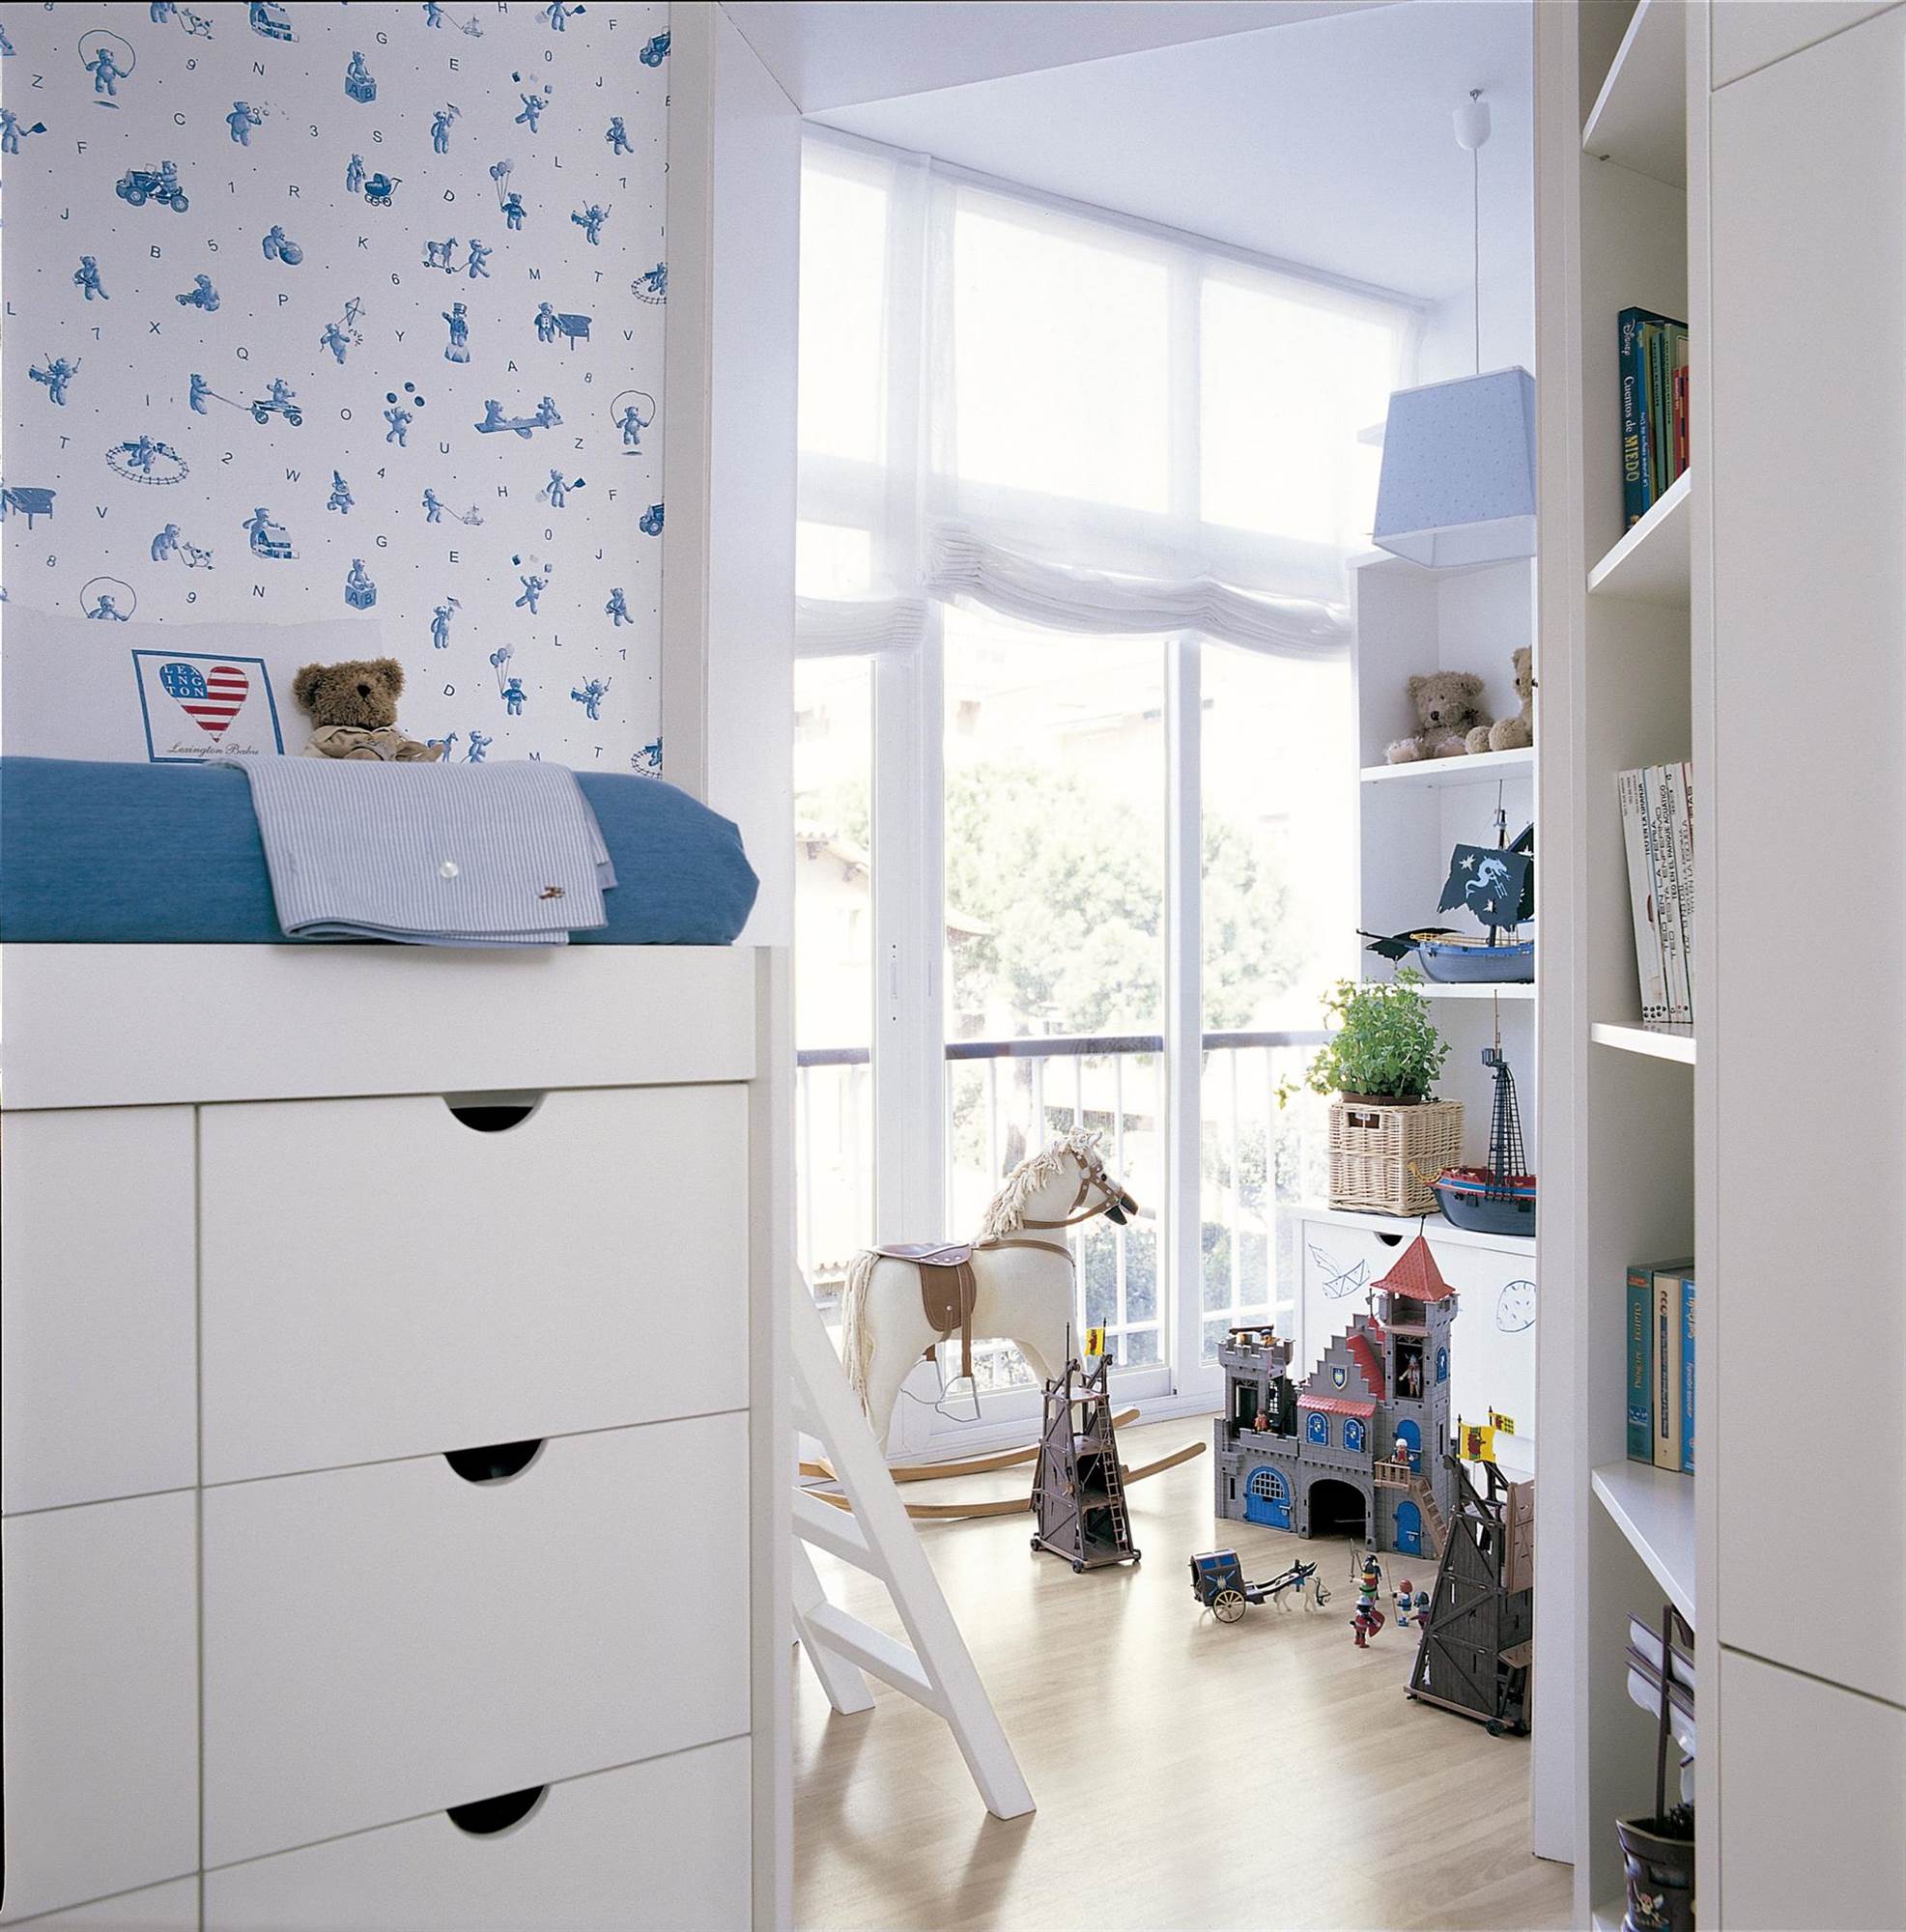 Dormitorio infantil en azul con zona de juegos, papel pintado y cama elevada.